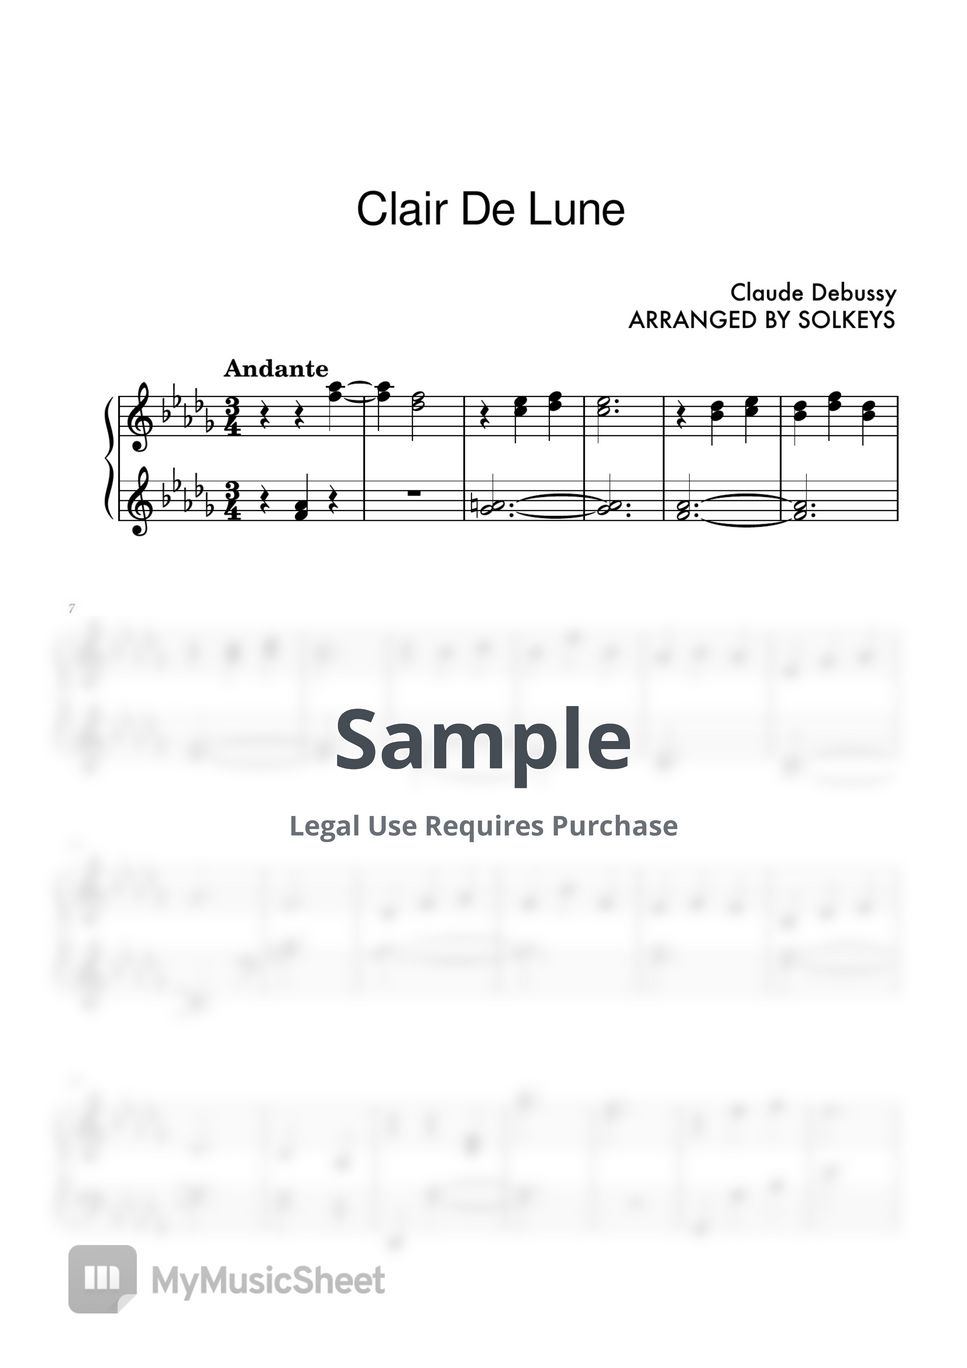 Claude Debussy - Clair De Lune by SolKeys